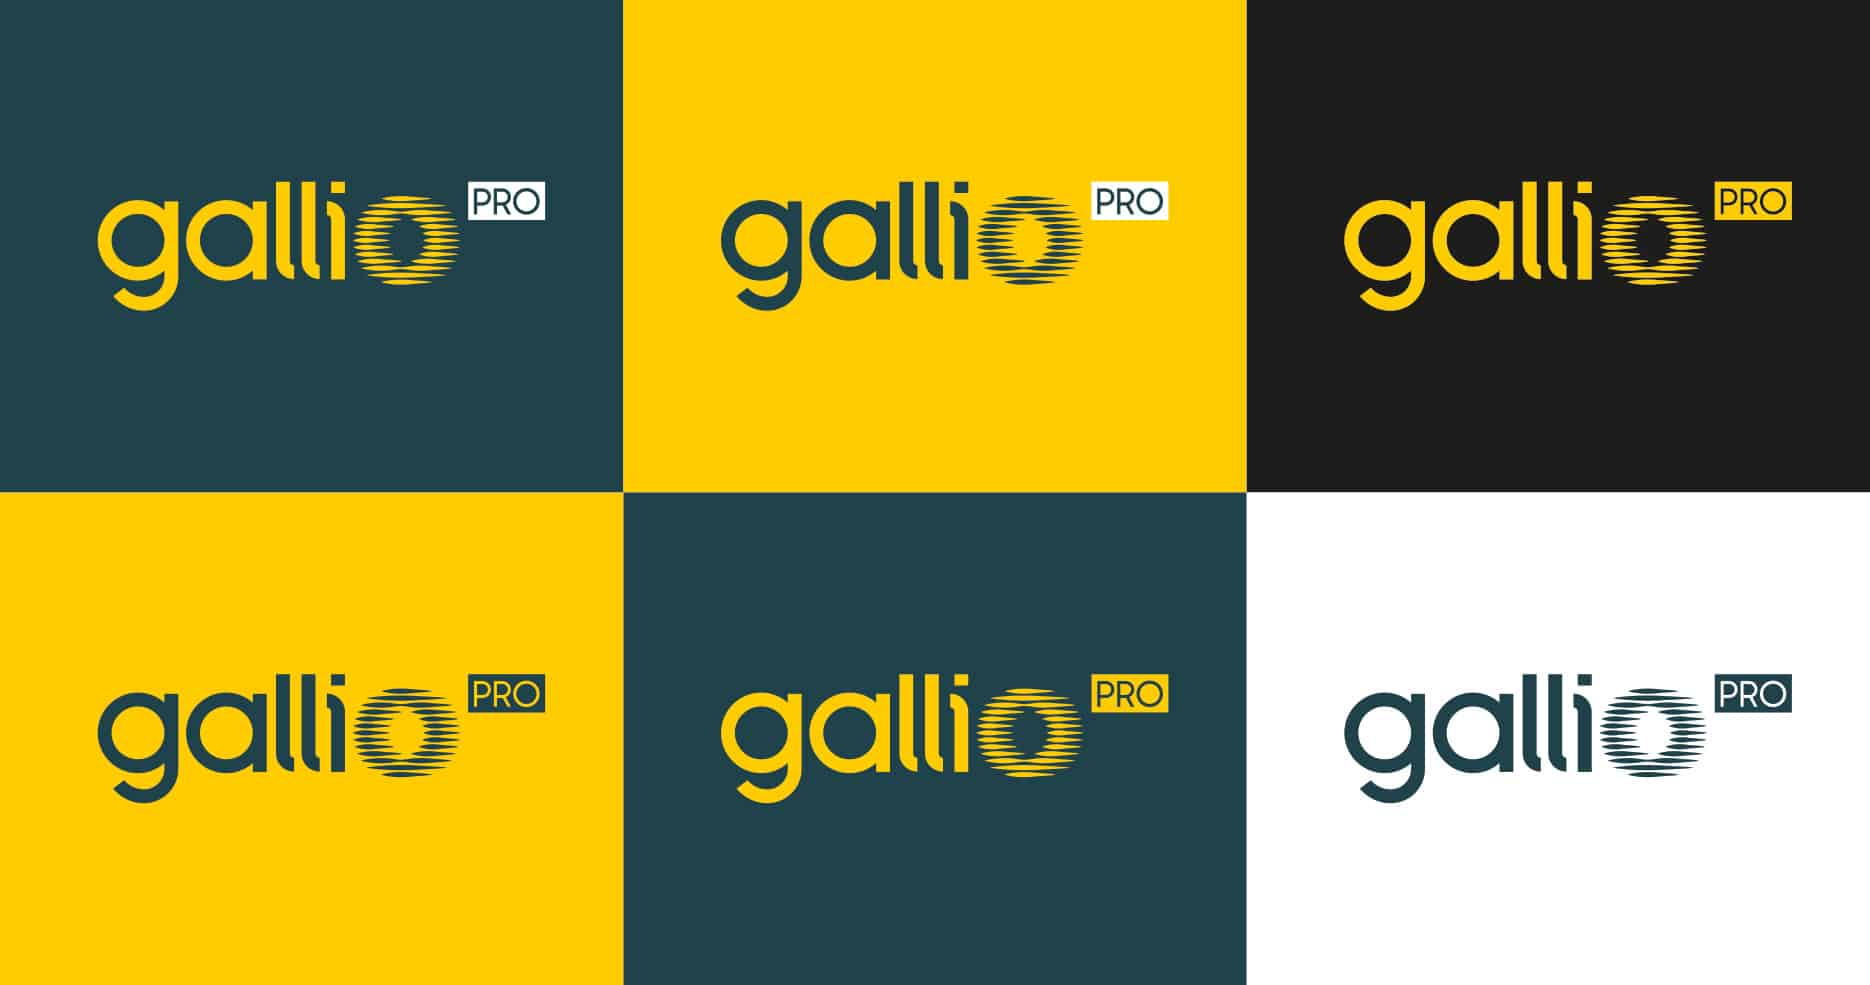 gallio PRO logo warianty kolorystyczne